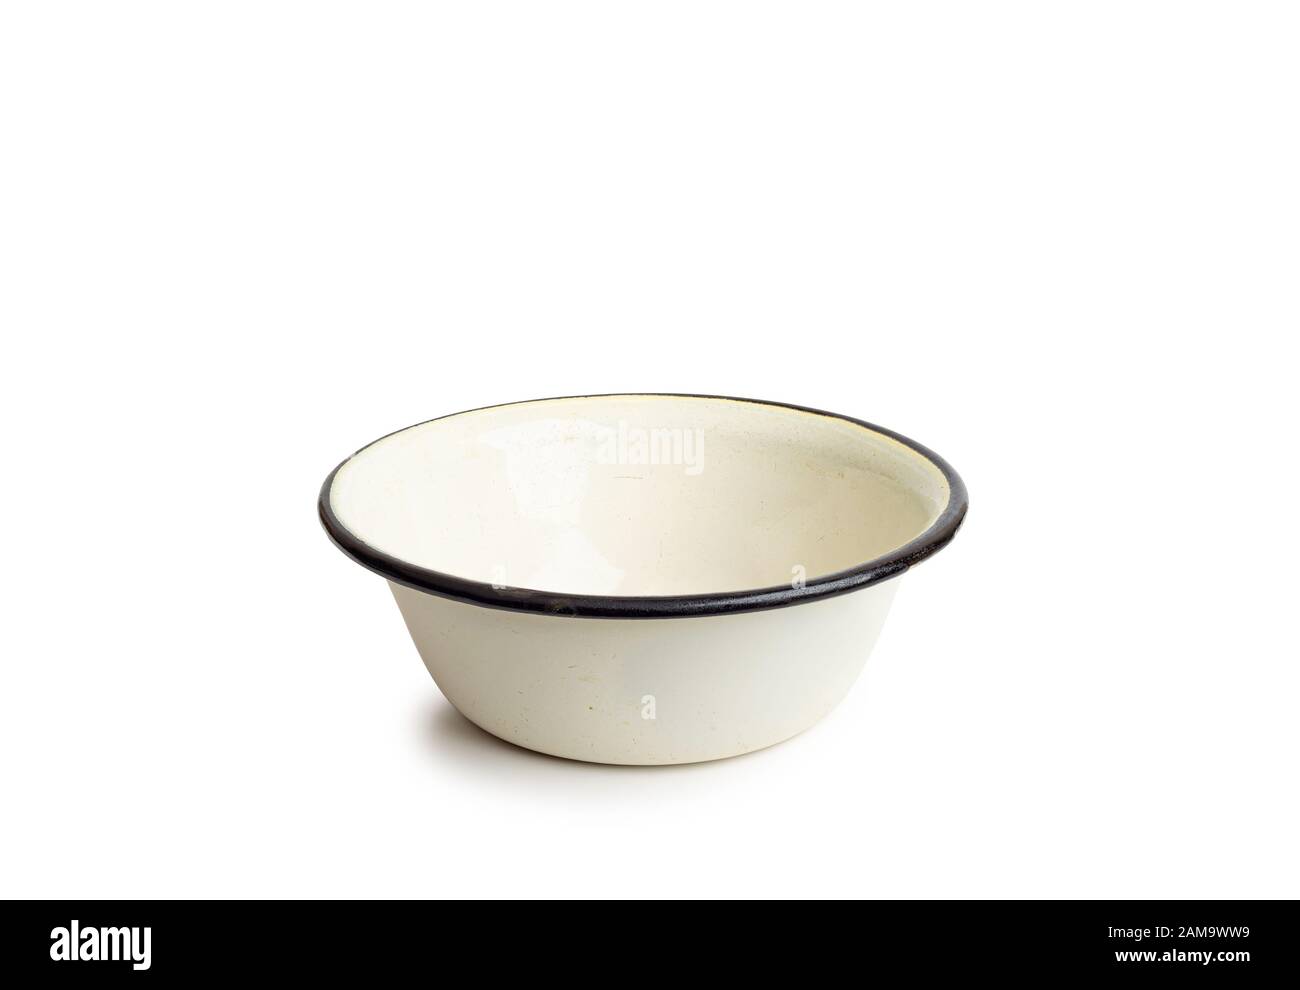 Old enamel dishe, or bowl, isolated on white background Stock Photo